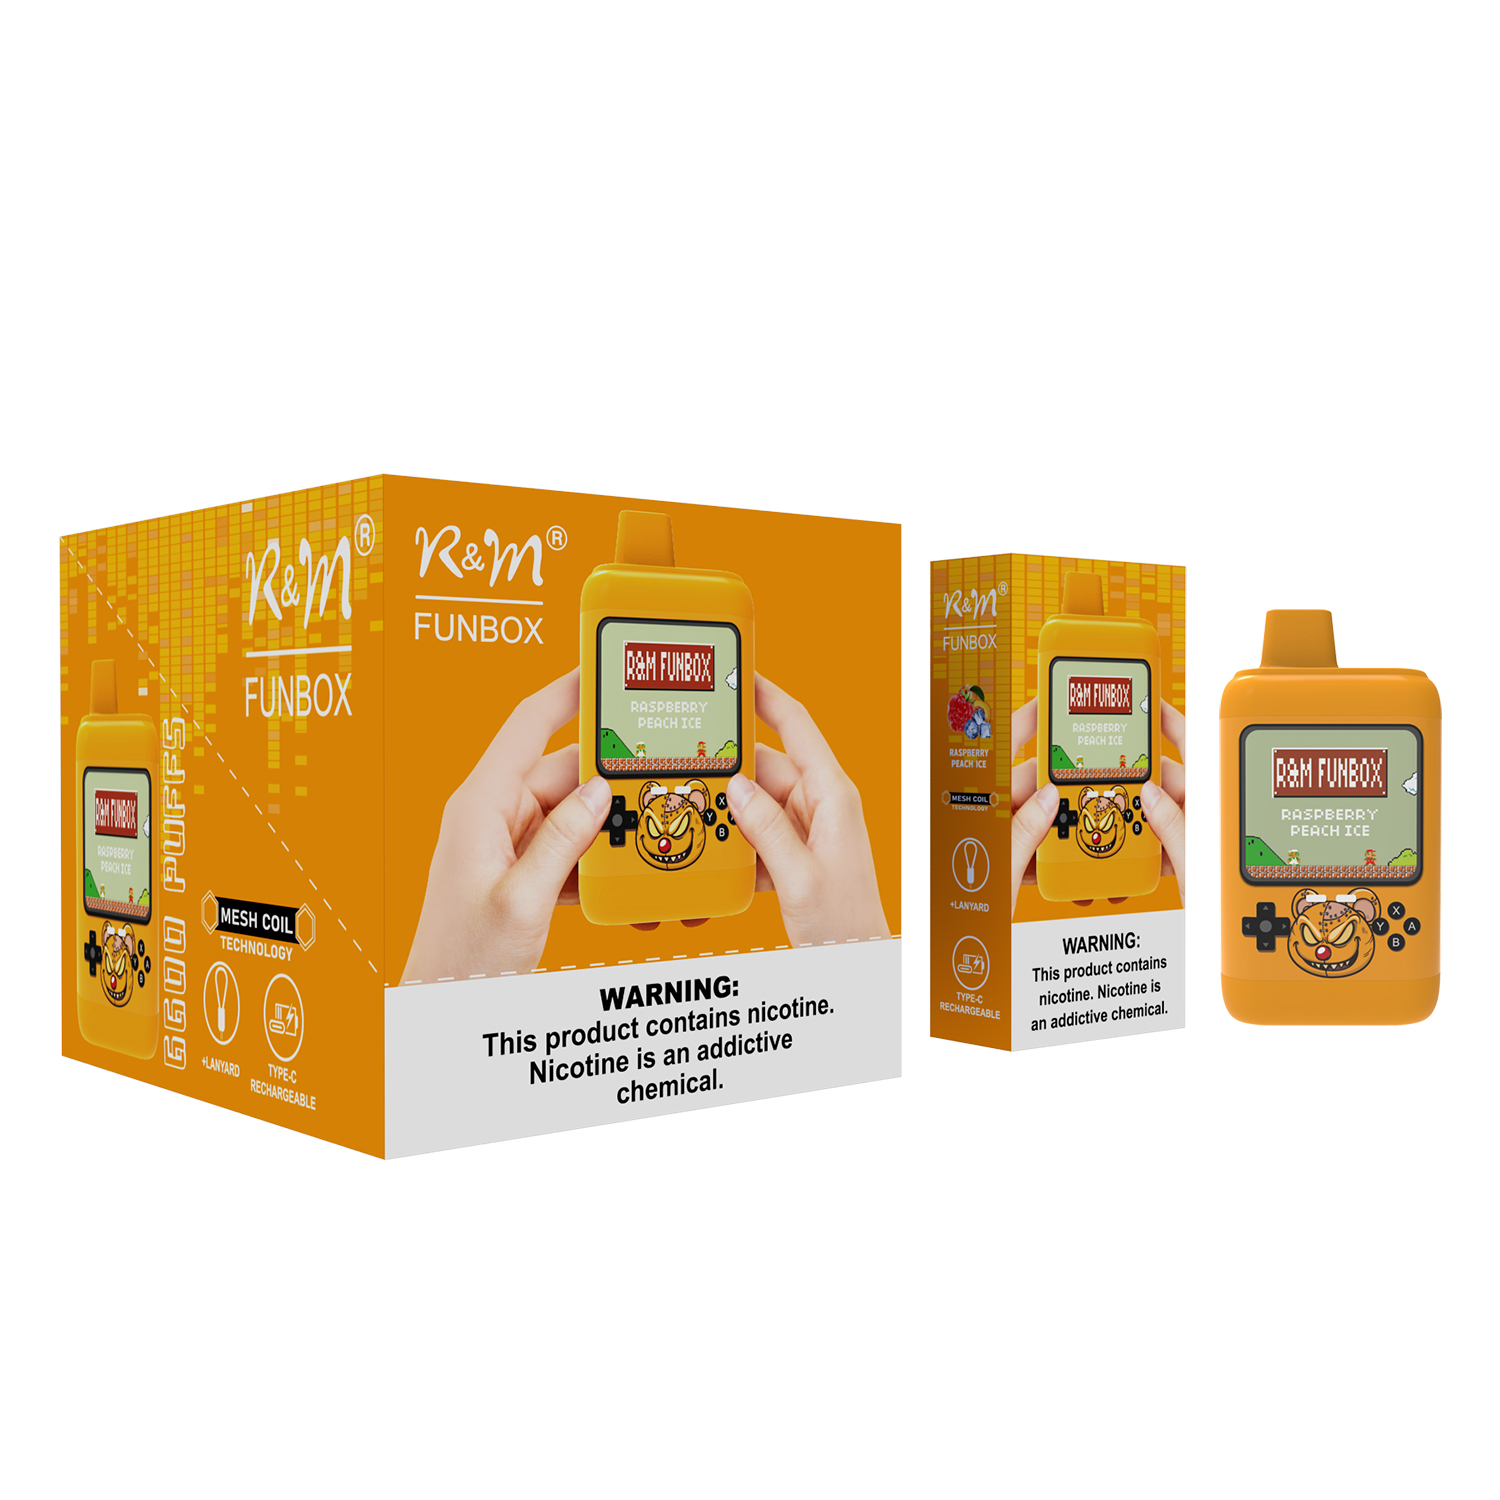 Original Box Shape Mesh Coil Rechargeable 6600 Puffs R&M FUNBOX Disposable Vape Electronic Cigarette